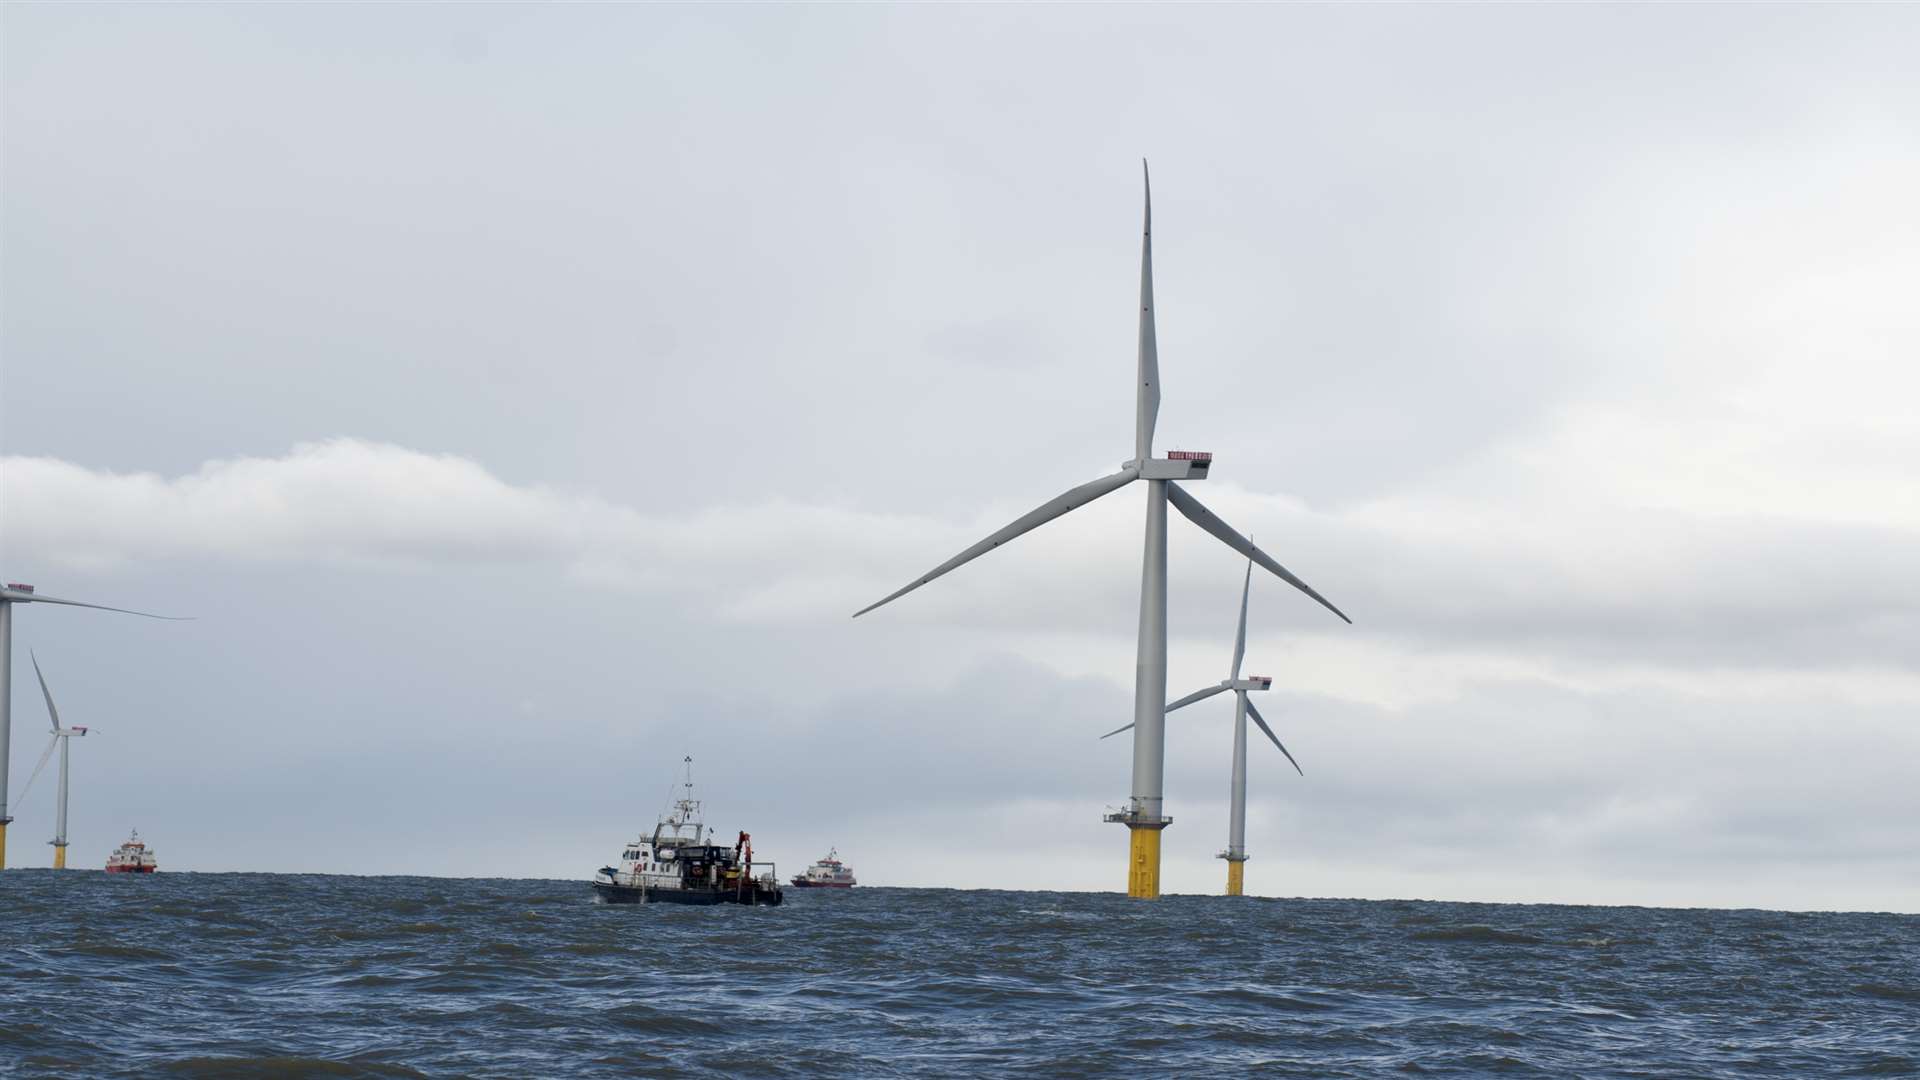 Vessels serving the London Array wind farm use fuel supplied by Jentex